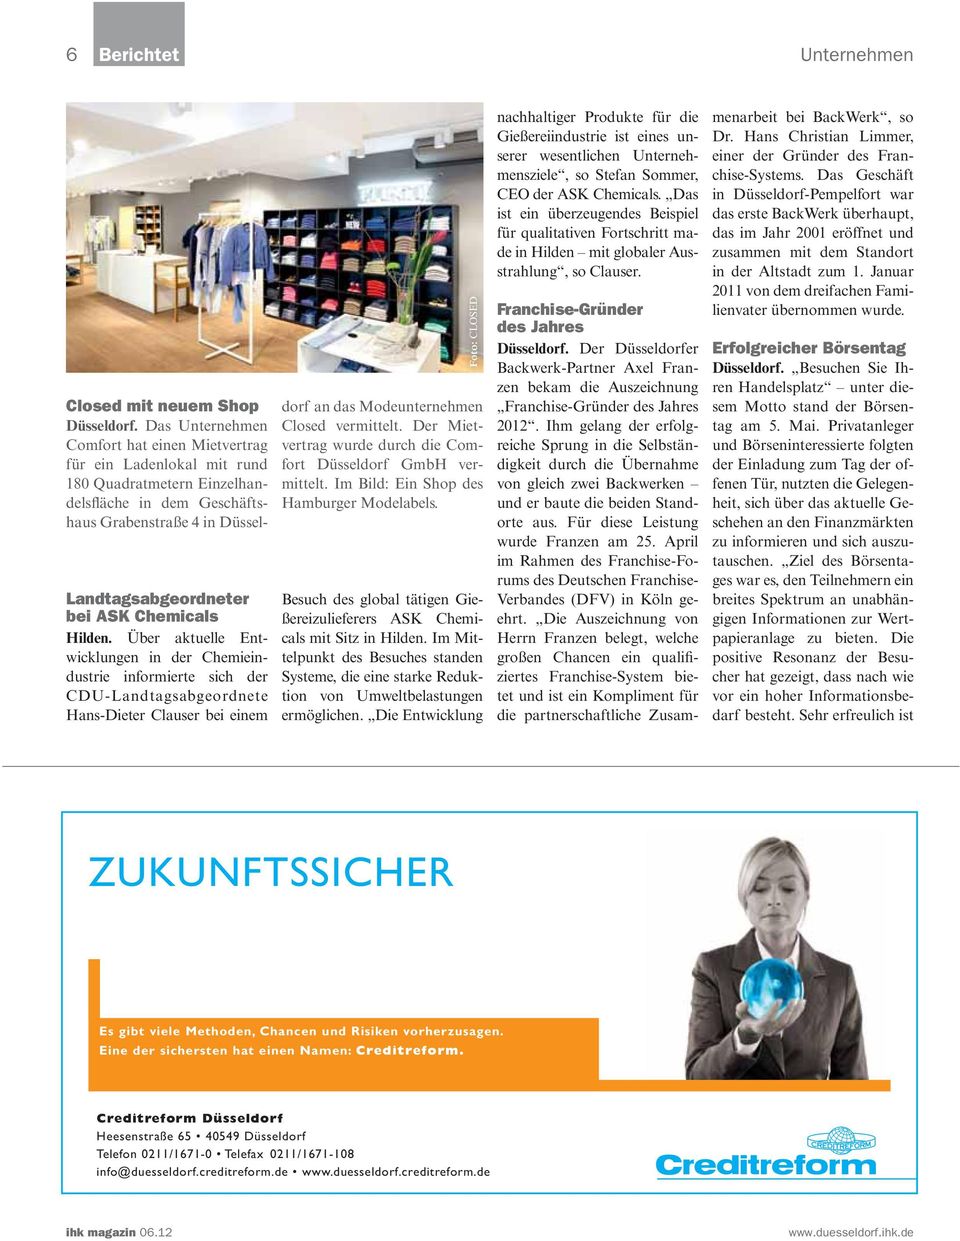 Das Unternehmen Comfort hat einen Mietvertrag für ein Ladenlokal mit rund 180 Quadratmetern Einzelhandelsfläche in dem Geschäftshaus Grabenstraße 4 in Düsseldorf an das Modeunternehmen Closed